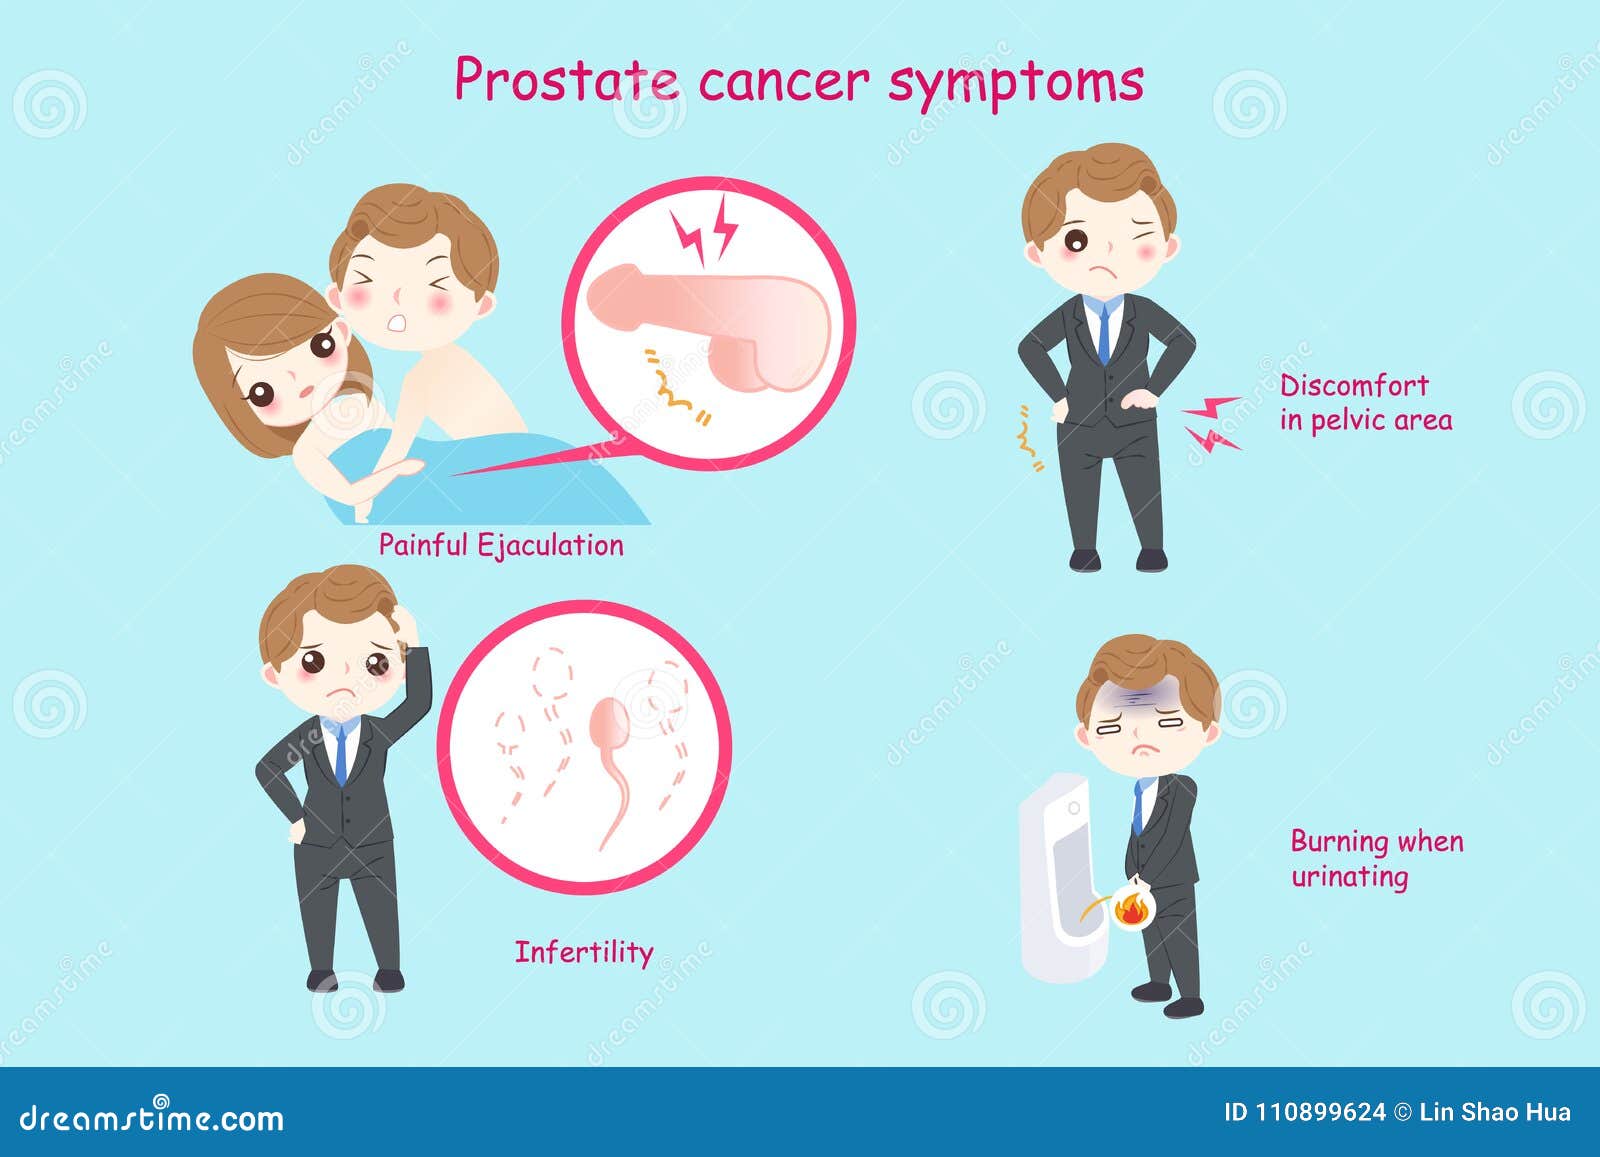 Cancer que enfermedad es. Cancer de prostata primeros sintomas